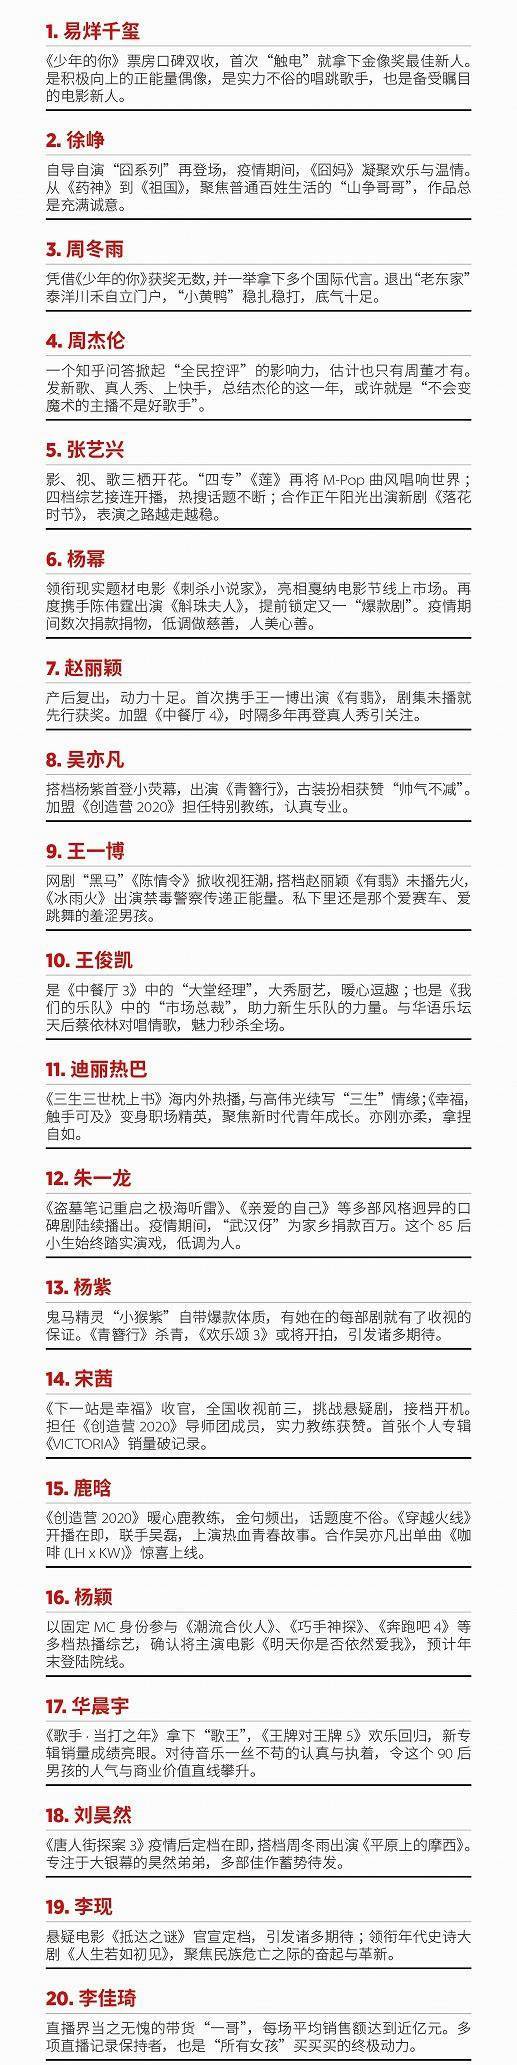 世界100名人排行榜_时代周刊评出20世纪影响世界的100位名人,中国只有两人上榜